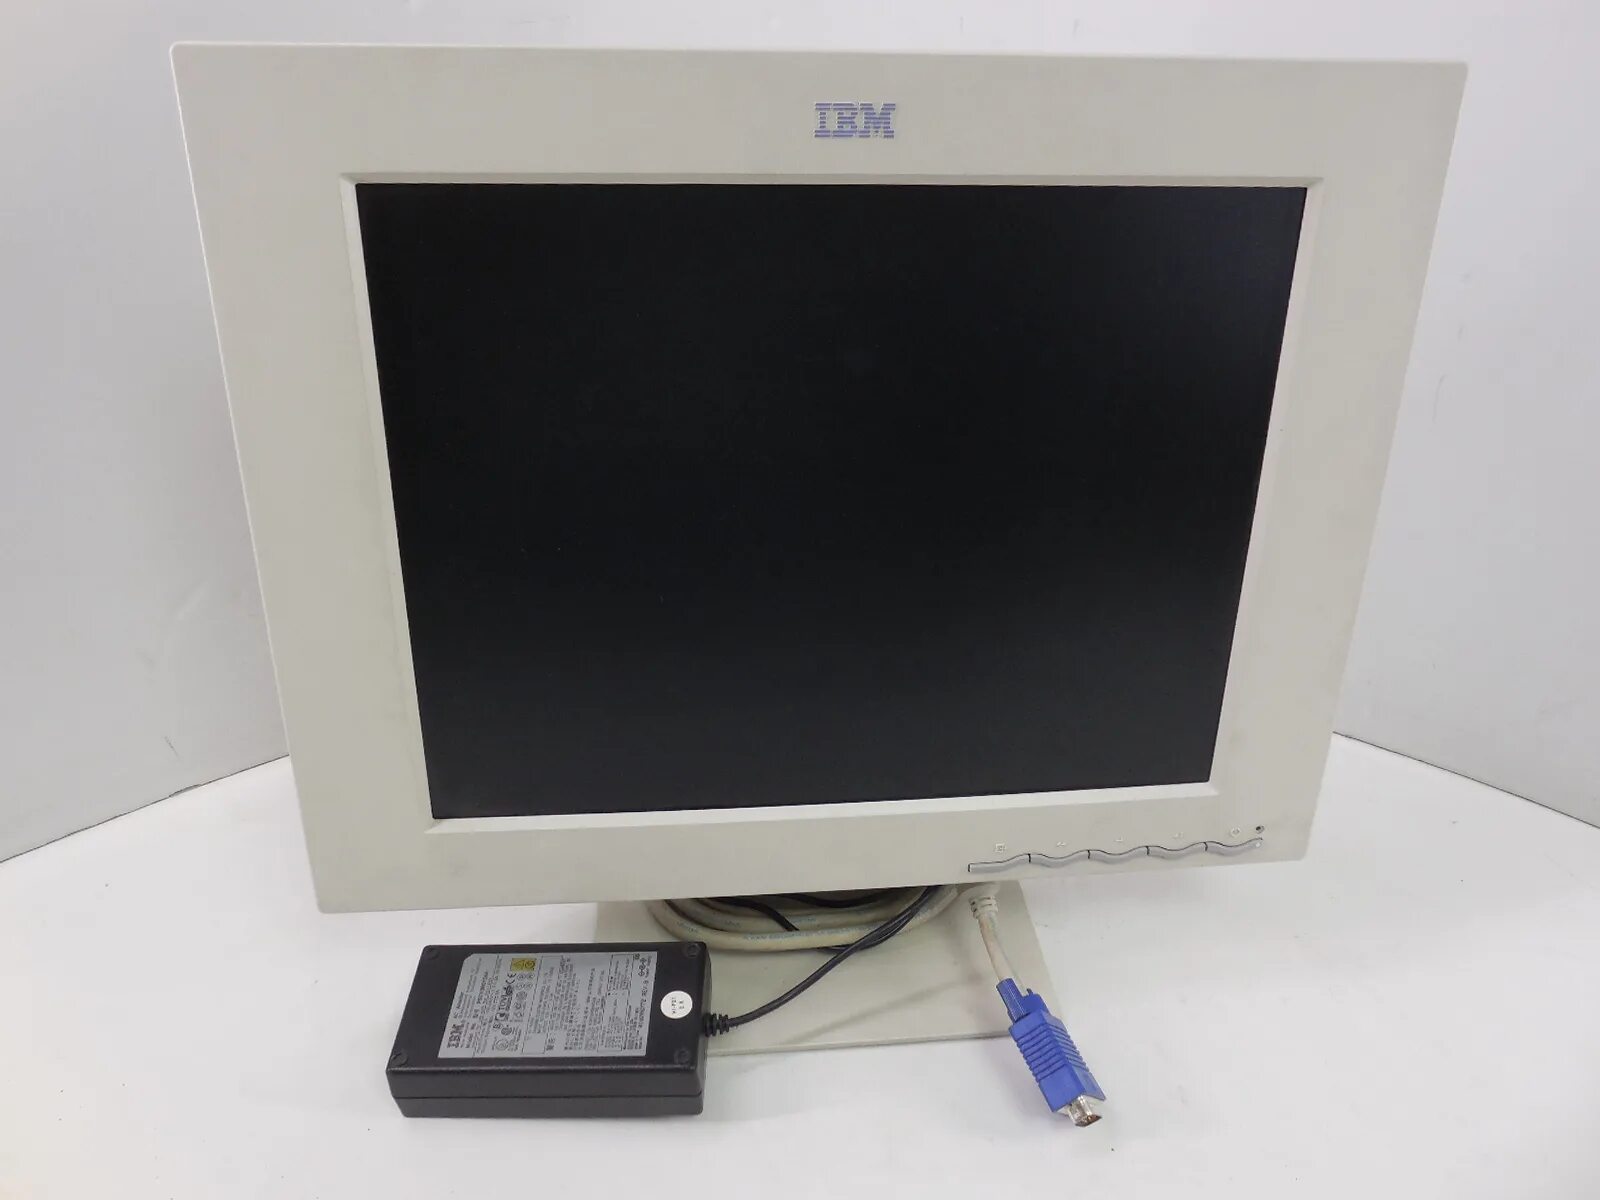 1 жк монитор. Монитор модель: IBM 9511-aw1. Монитор TFT 15" IBM 9511-aw4. Монитор IBM 15 дюймов. Монитор IBM 6780.